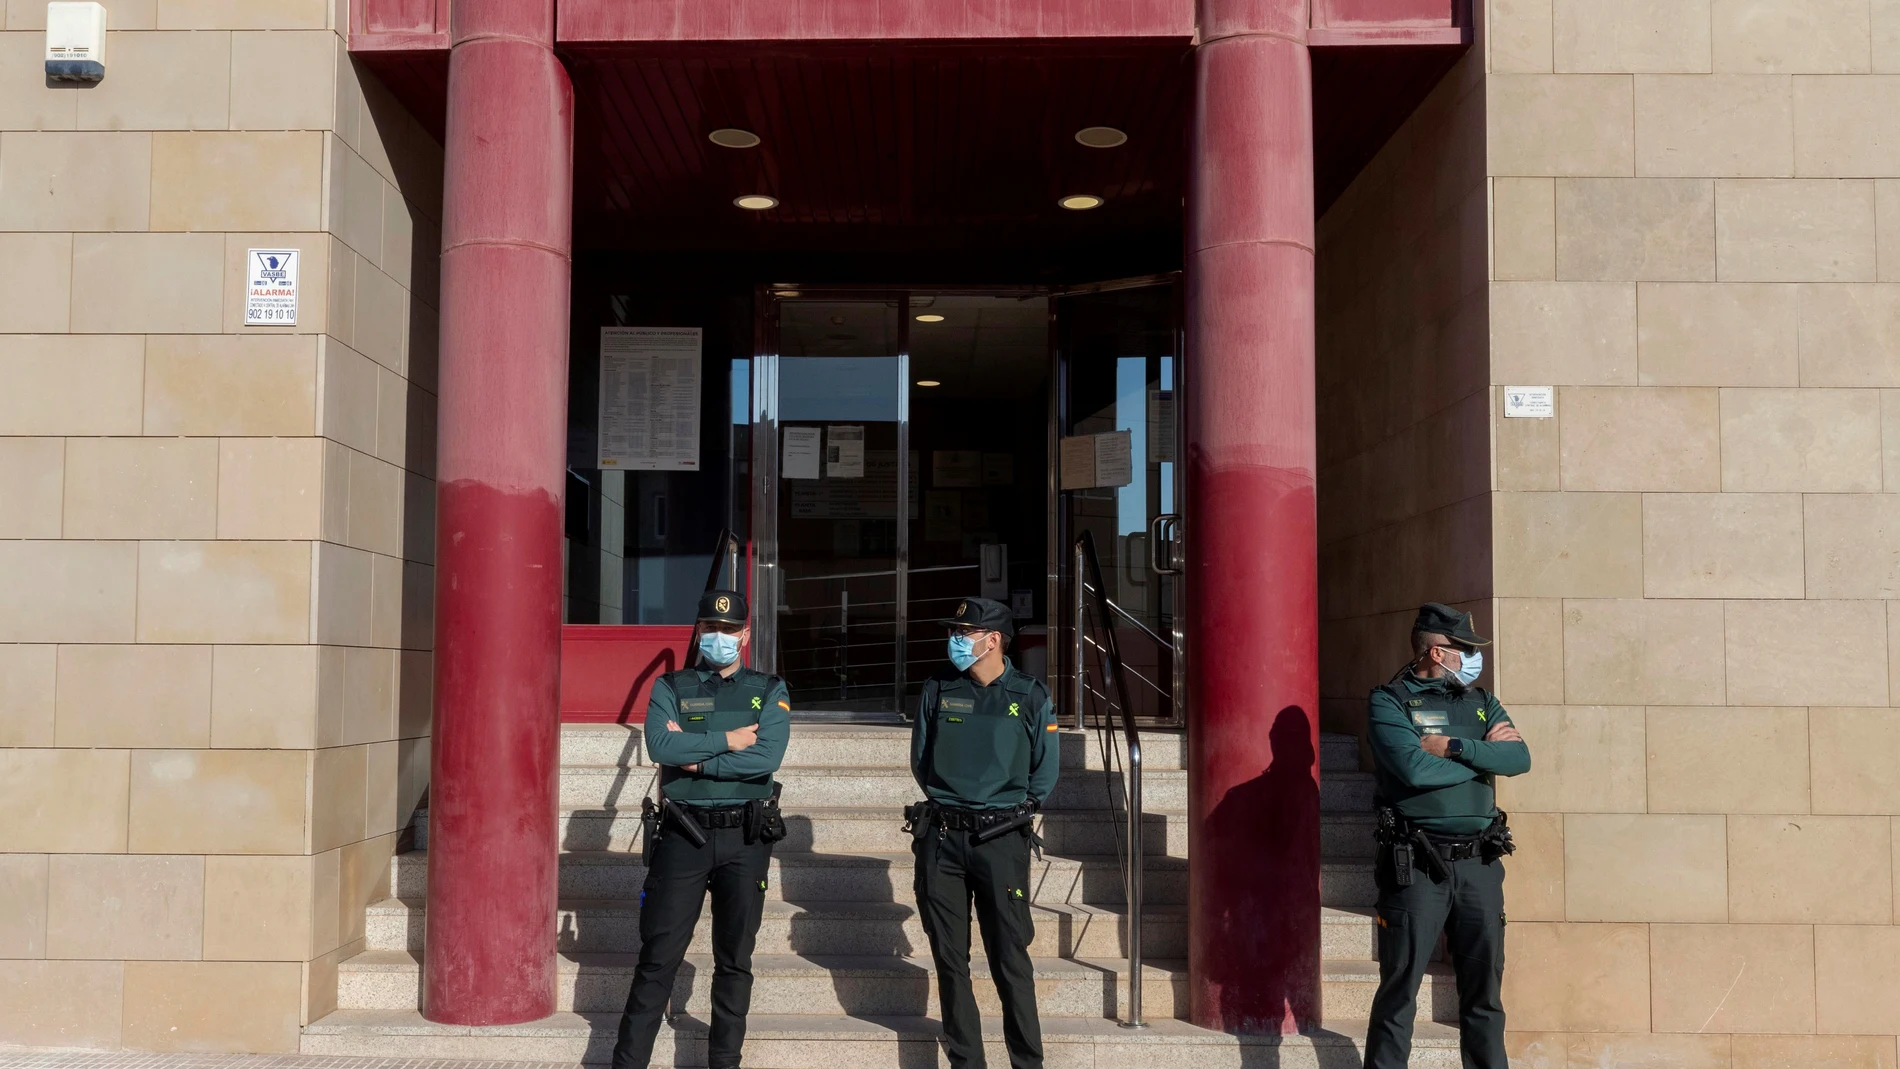 La guardia civil custodia la puerta principal de los juzgados de Totana, Murcia, donde está declarando Johan S., el joven de 19 años detenido este miércoles tras confesarse autor de la muerte por arma blanca de su exnovia, una menor de 17 años vecina de Totana. EFE/ Marcial Guillén